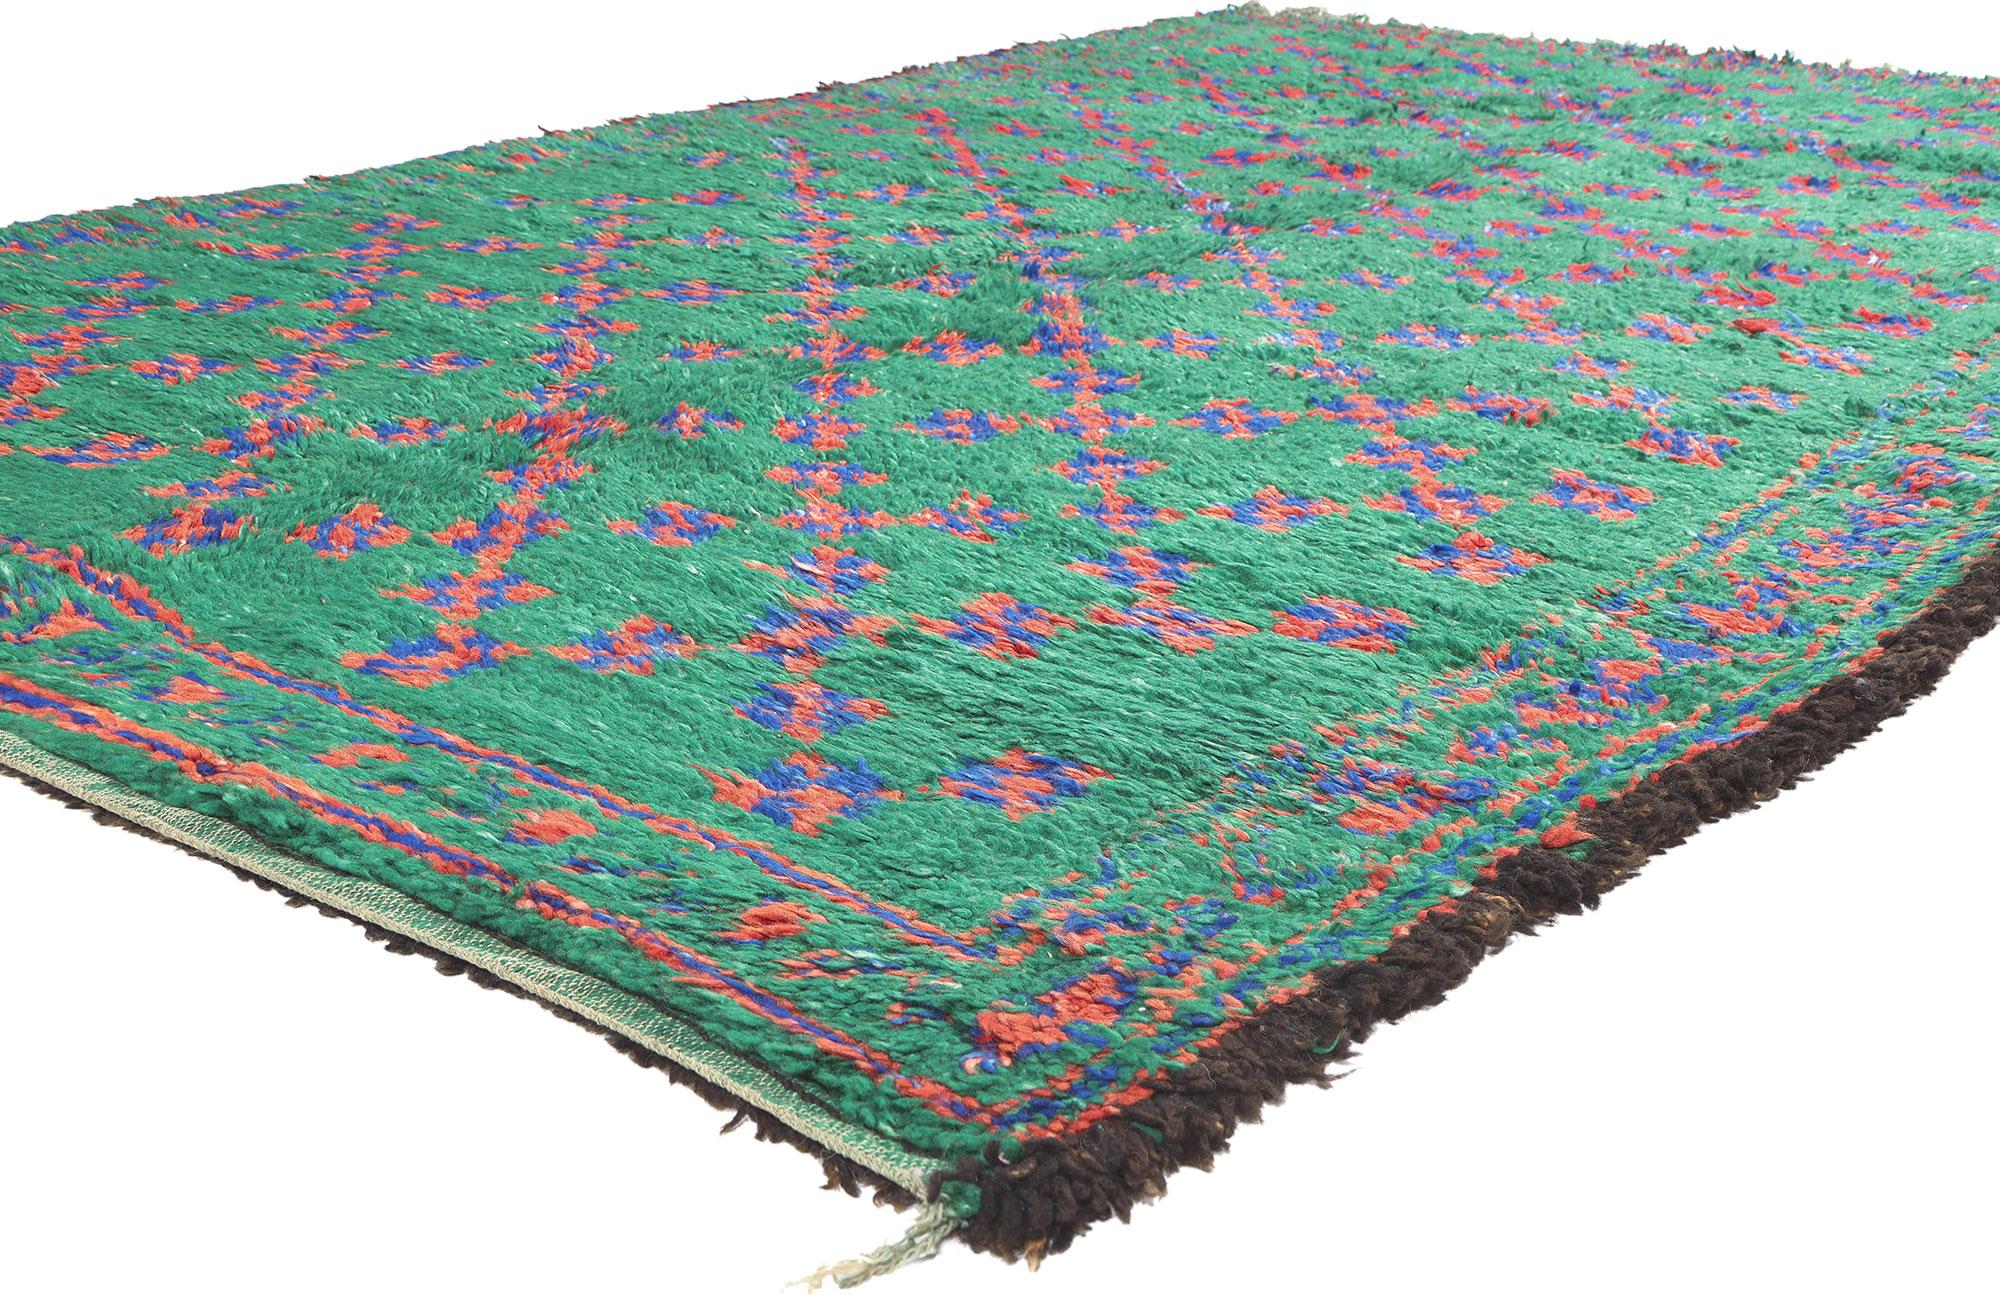 21216 Vintage Grün Beni MGuild Marokkanischer Teppich, 06'00 x 10'02. Die Teppiche von Beni Mguild, die von Berberfrauen des Ait M'Guild-Stammes im mystischen Atlasgebirge in Marokko gewebt wurden, sind verehrte Artefakte, die meisterhafte